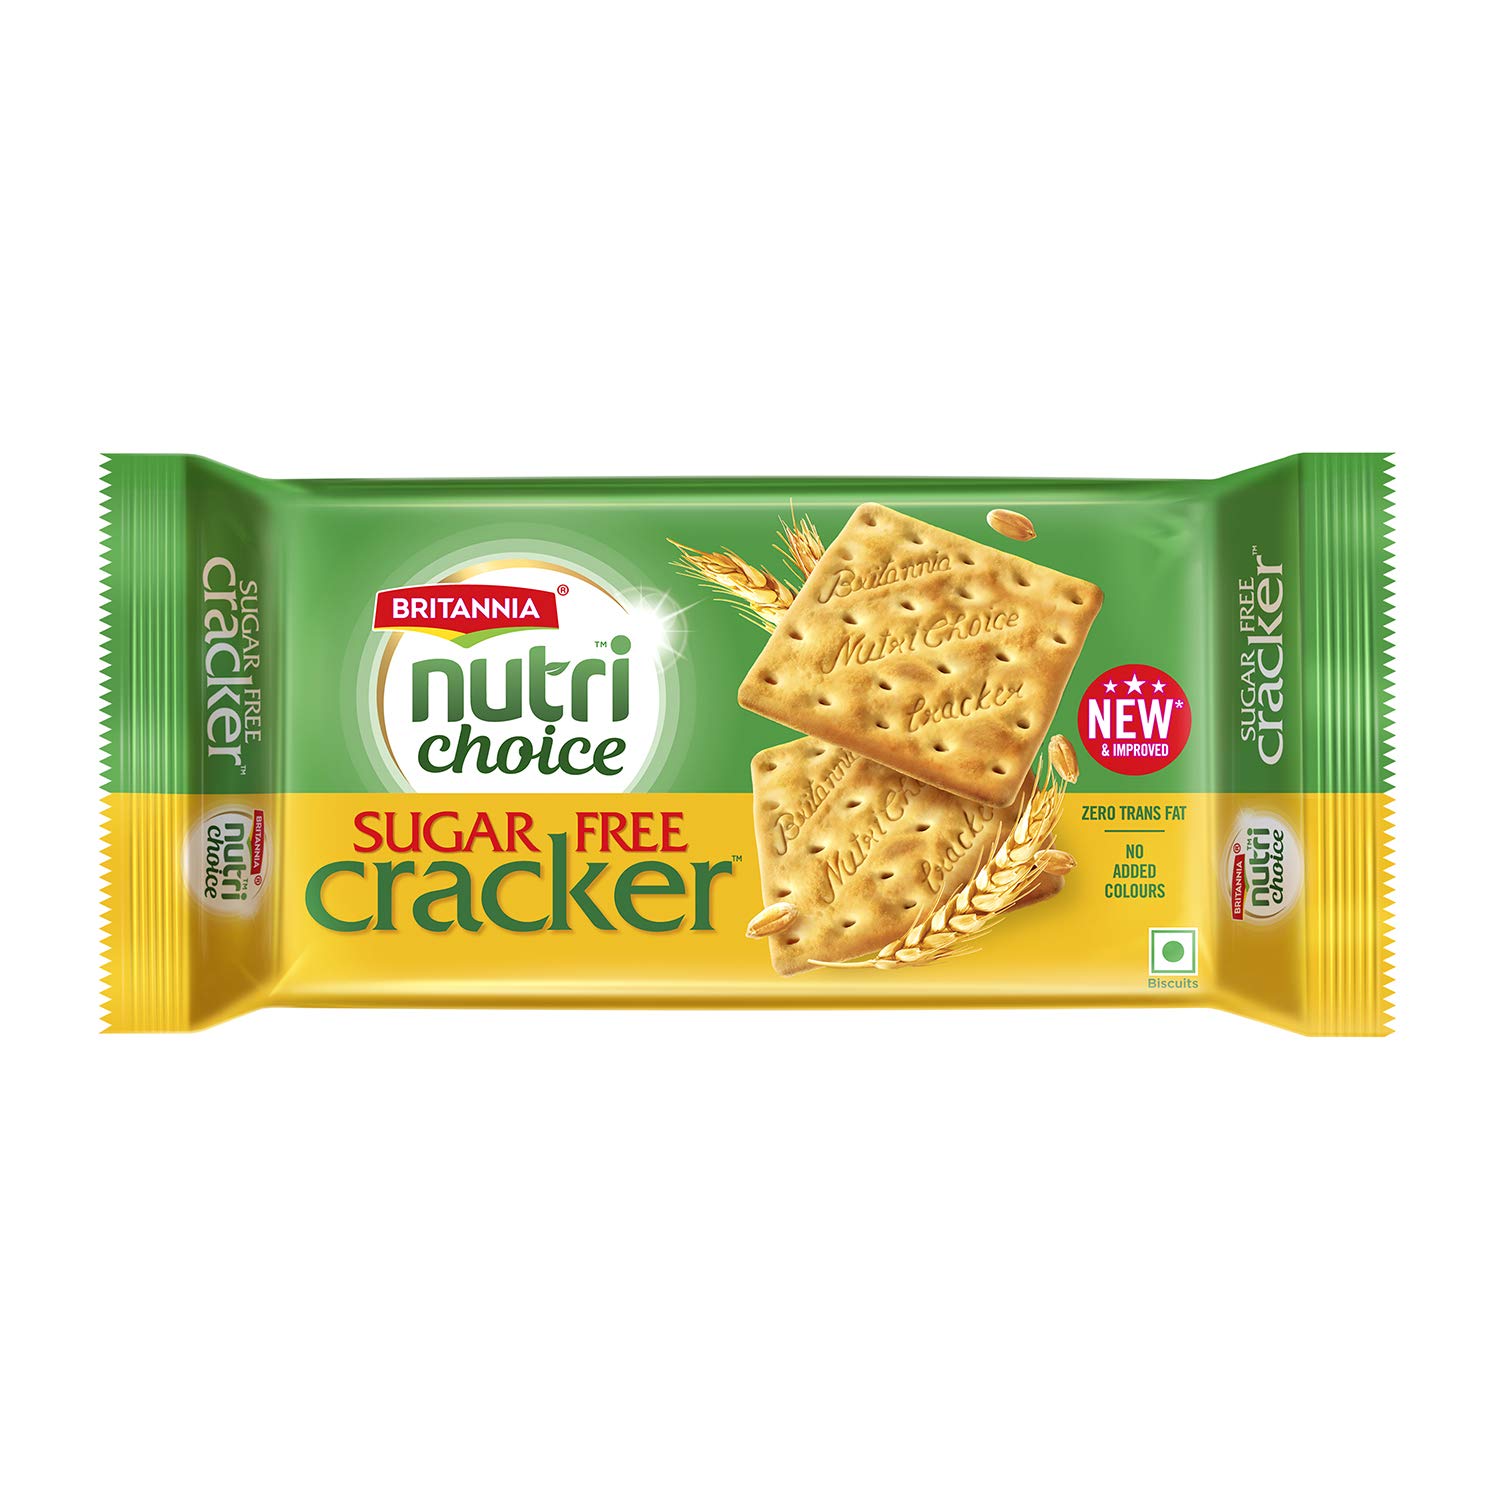 Britannia Nutri choice sugar-free cracker